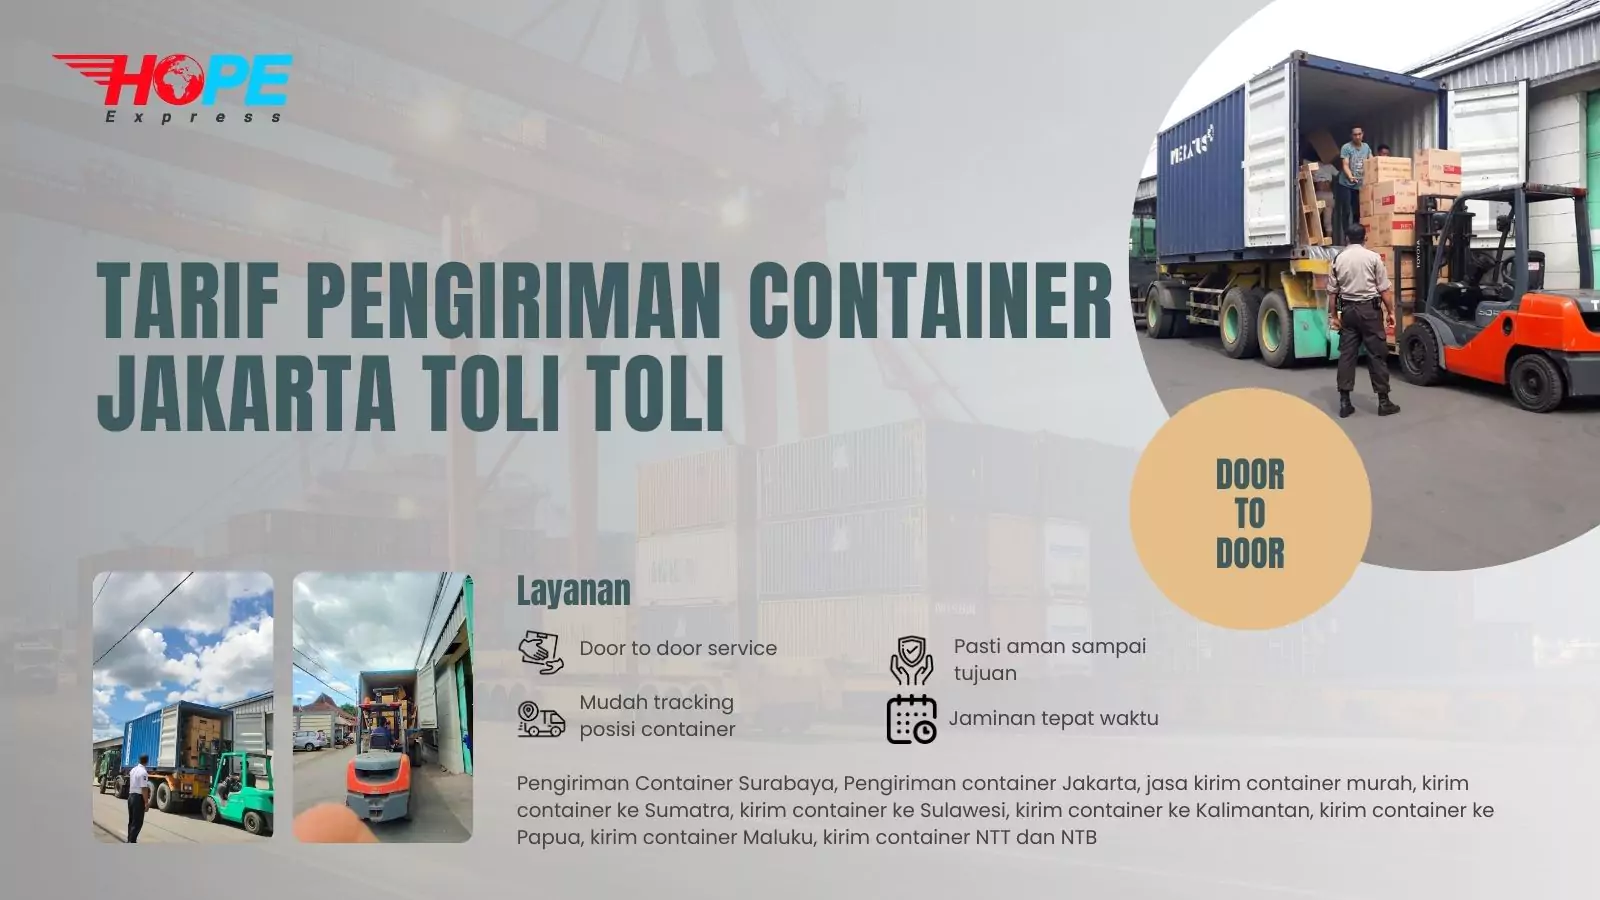 Tarif Pengiriman Container Jakarta Toli Toli